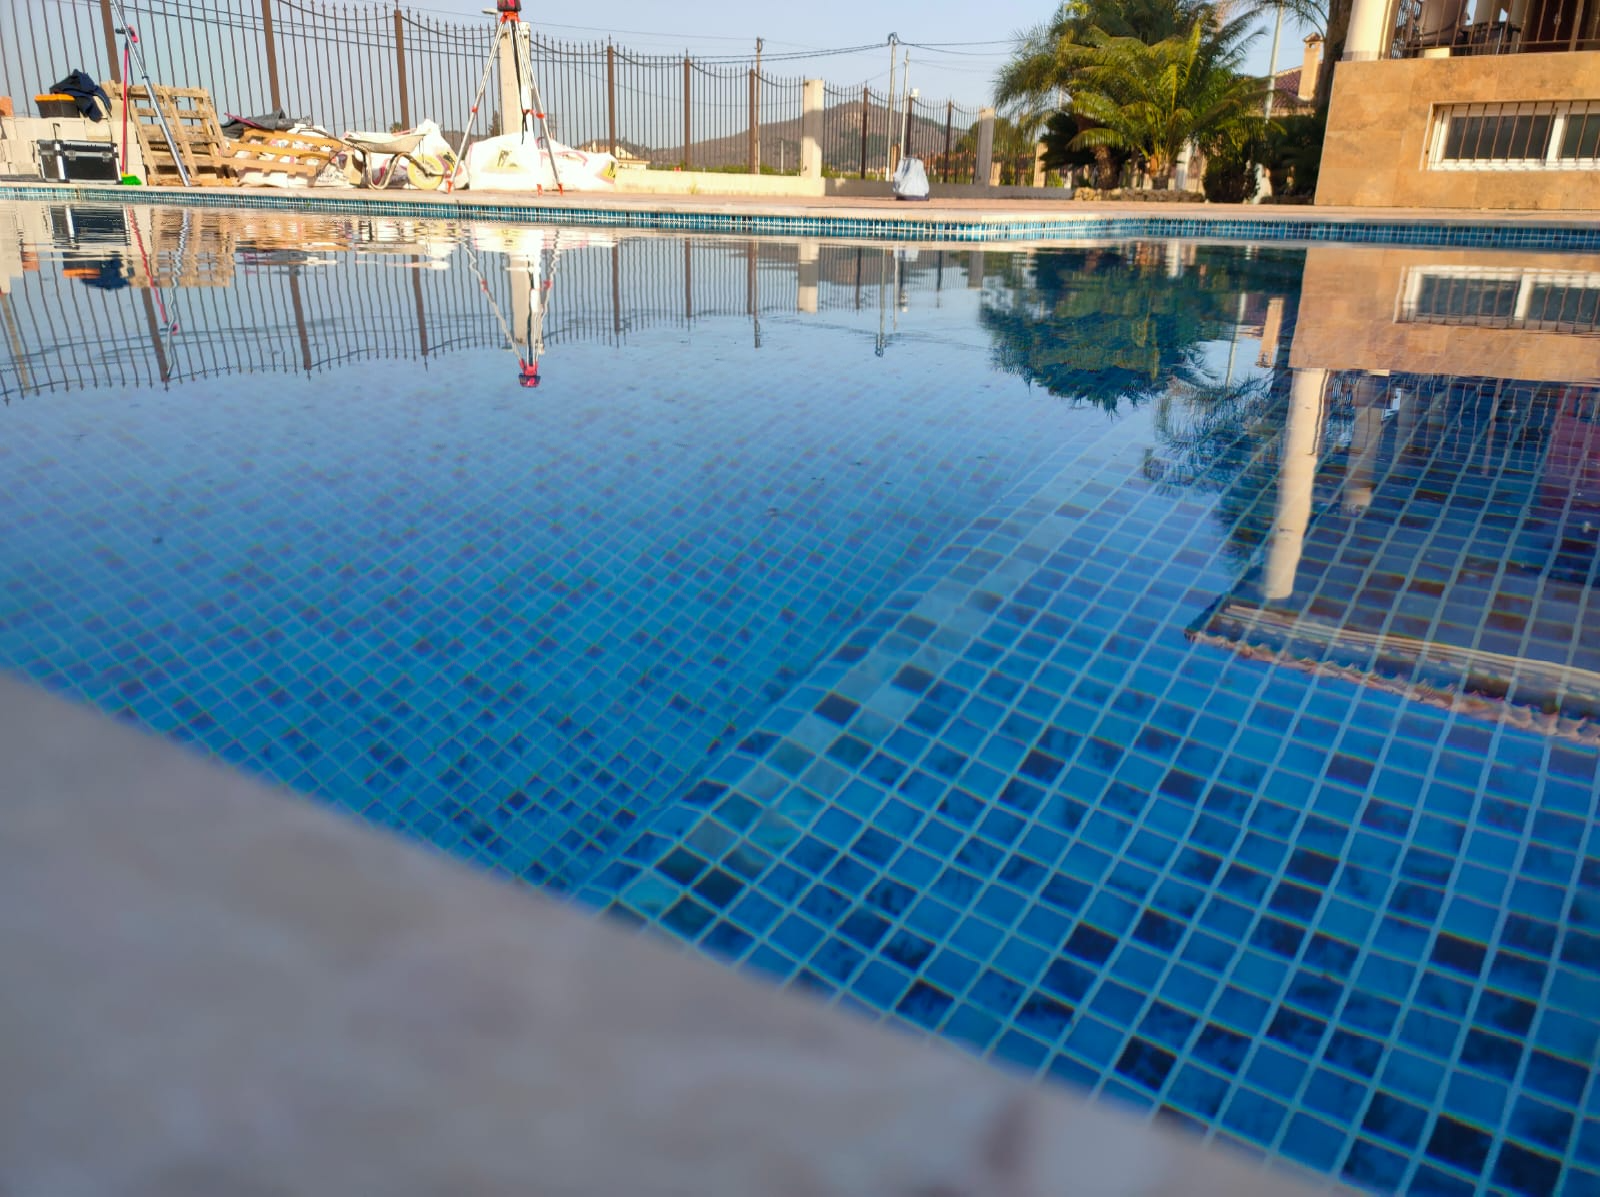 ReparaciÃ³n y mantenimiento de piscinas en Murcia.jpeg }}